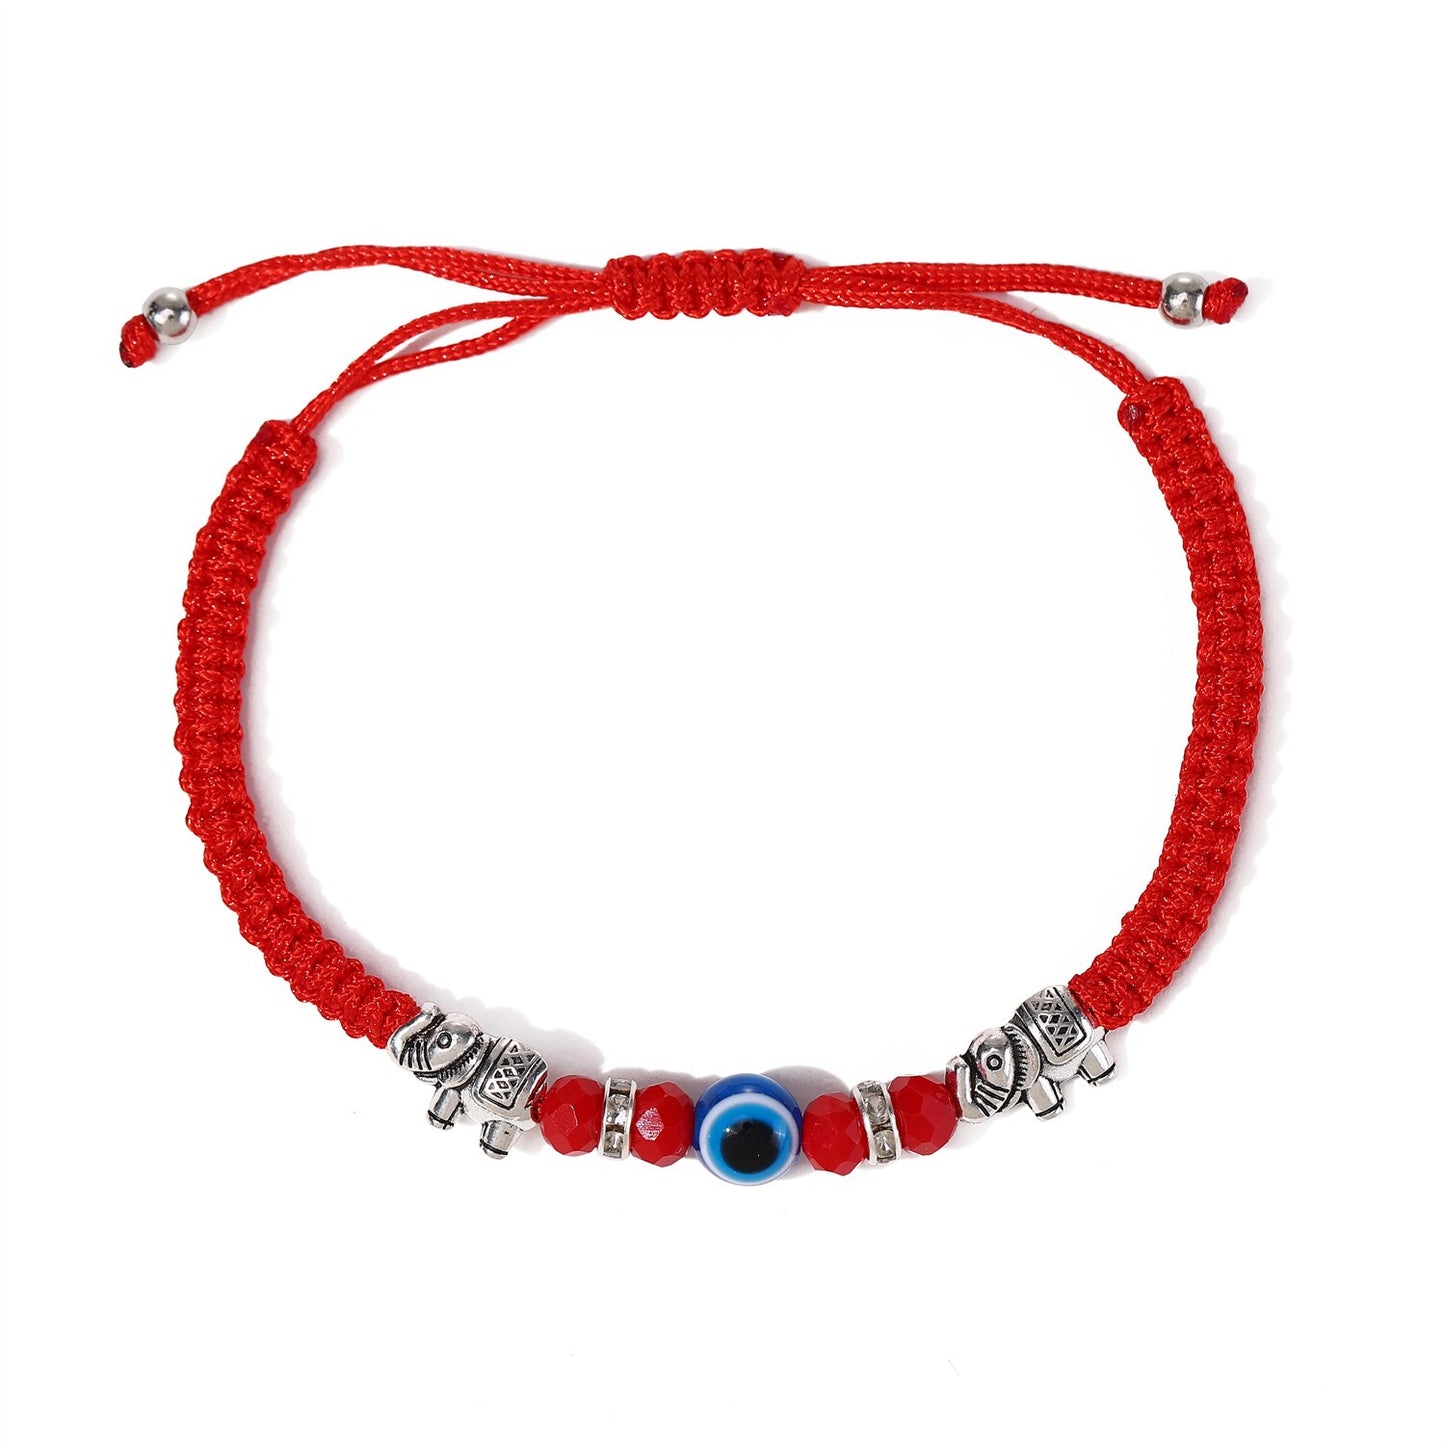 12pcs Handmade Thick Lucky Red Rope Braided Bracelet Evil Eye Bead Elephant Pendant Adjustable Bracelets for Women Men